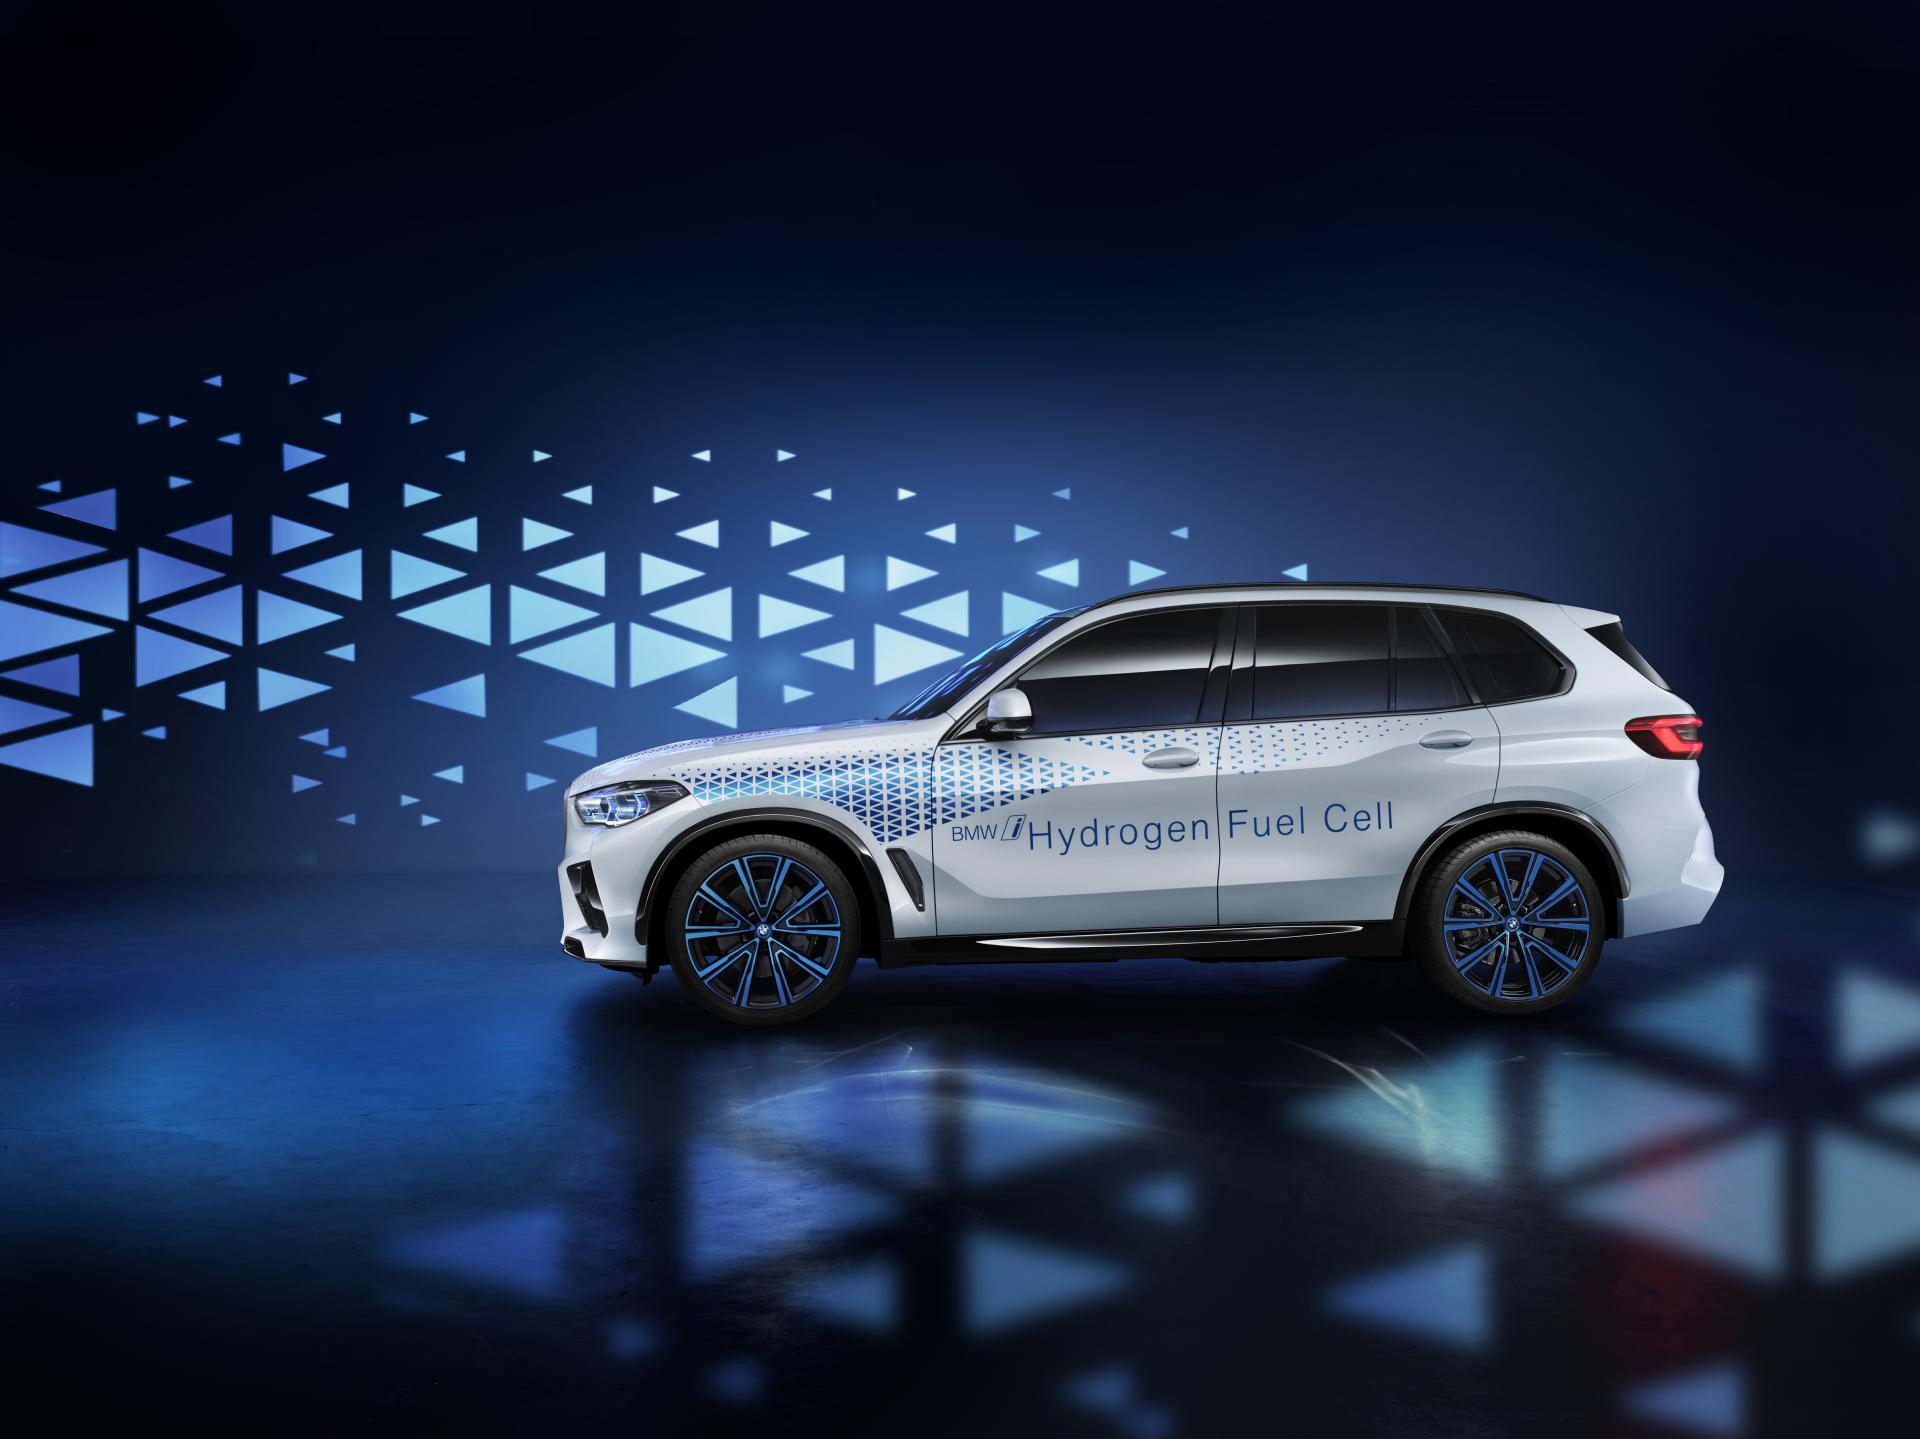 BMW-Entwicklungsvorstand: "Brennstoffzellen-Antrieb kann langfristig Säule im Antriebsportfolio werden"